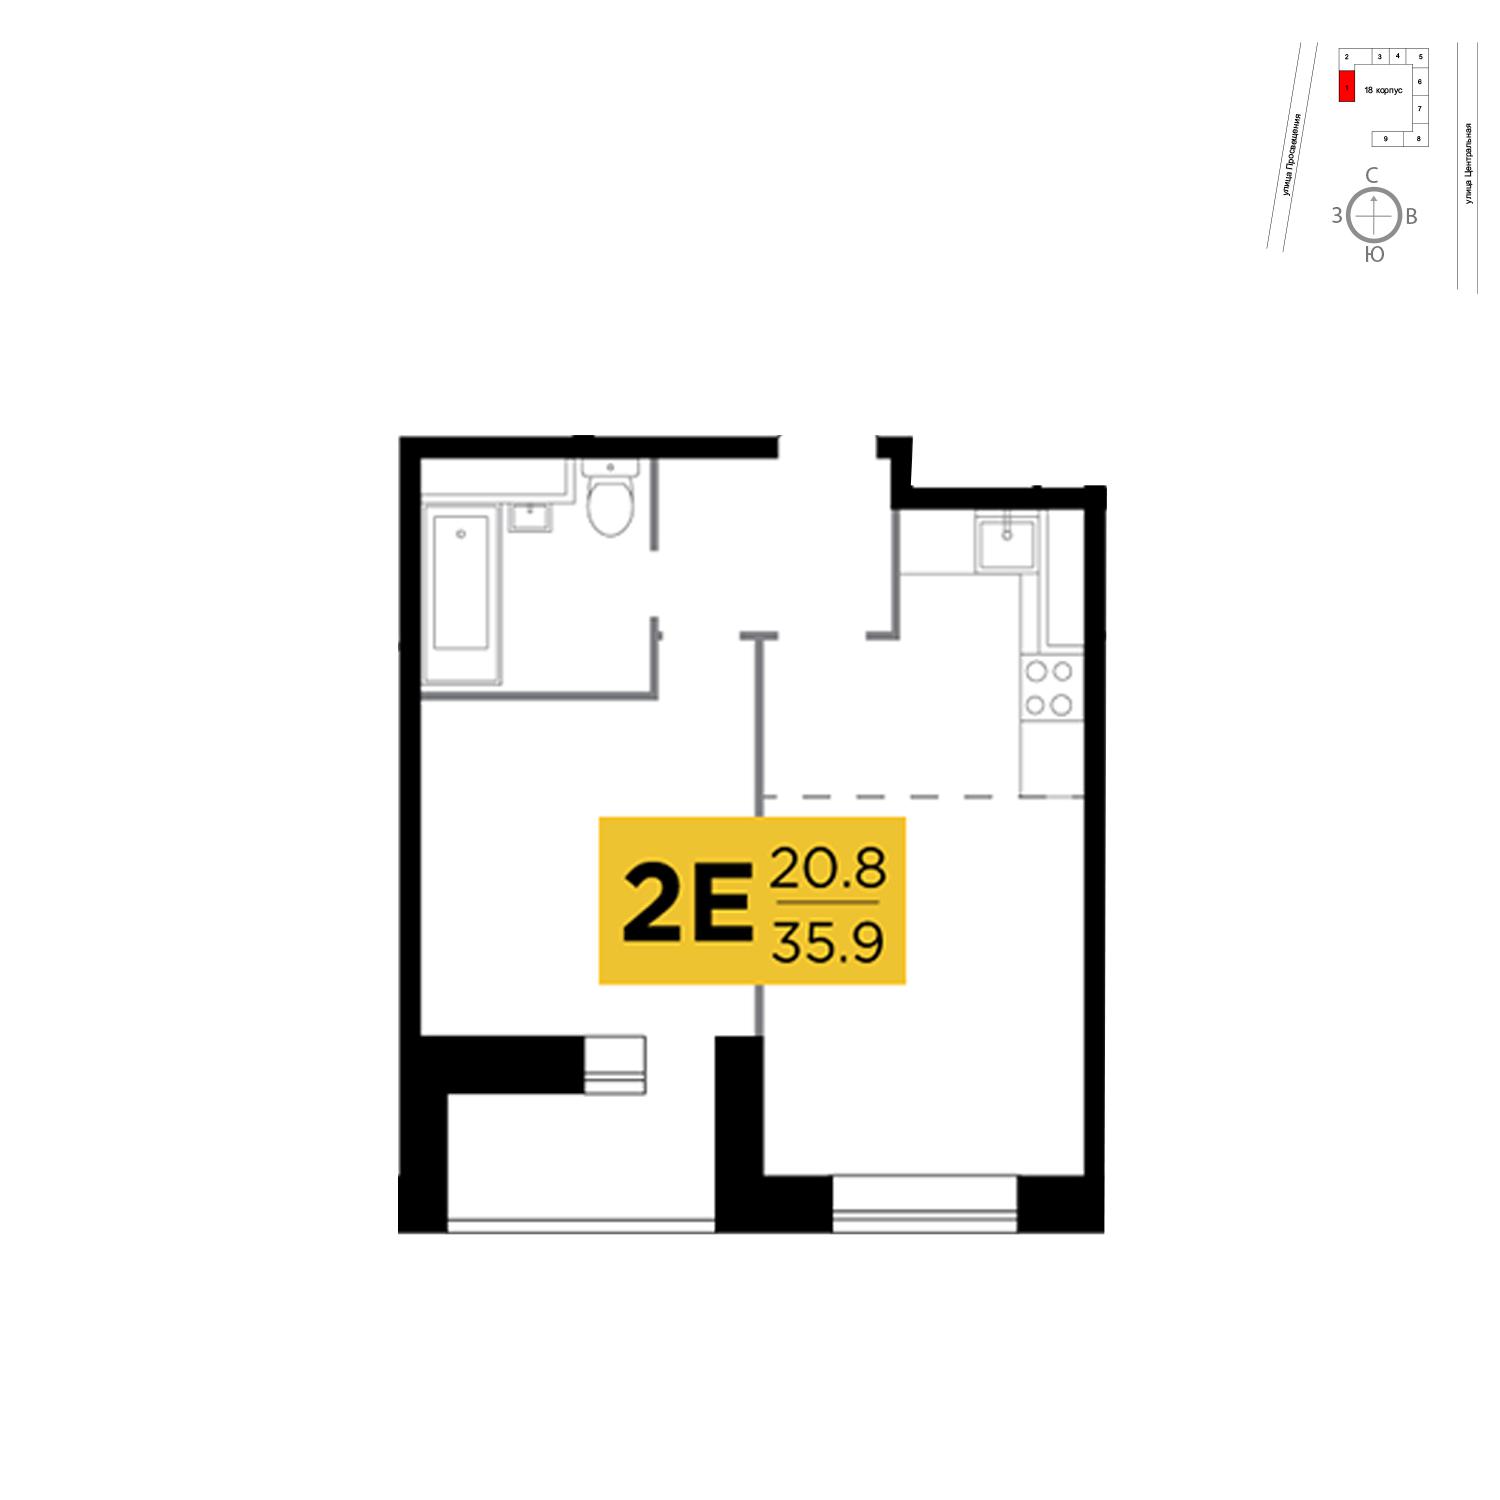 Продаётся 2-комнатная квартира в новостройке 35.9 кв.м. этаж 14/16 за 2 785 481 руб 